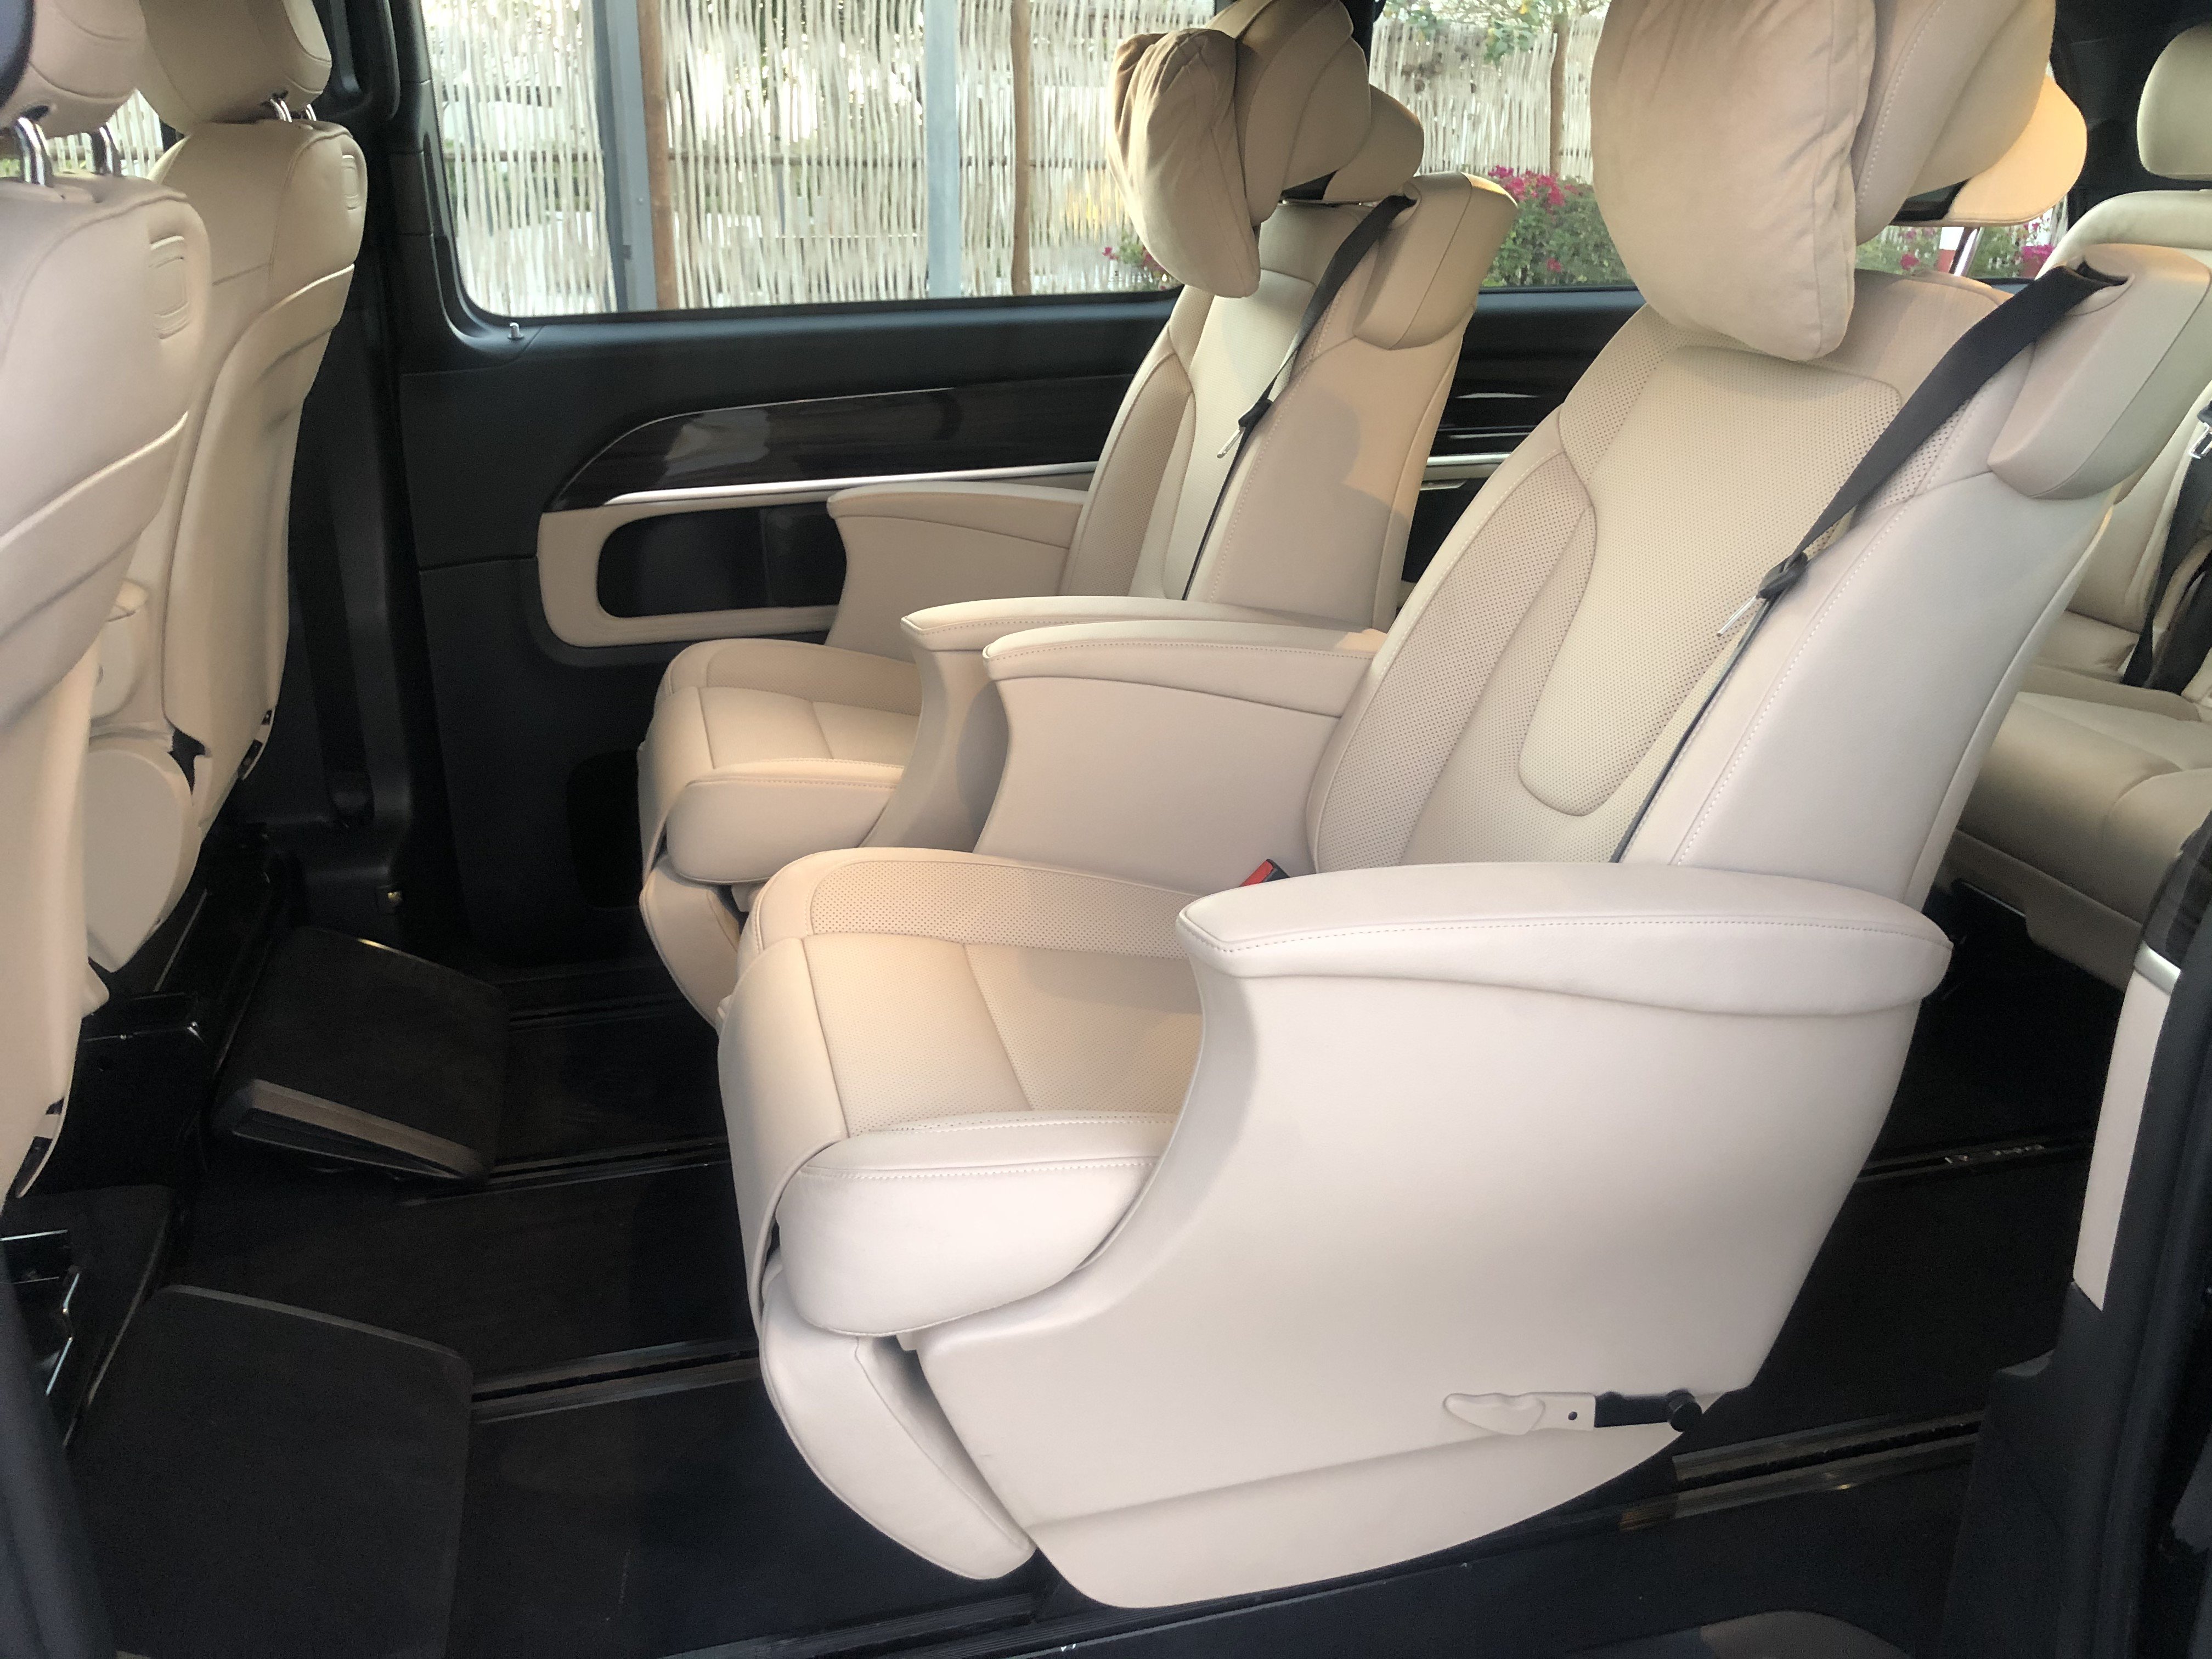 Mercedes Benz Avantgarde Interior Body